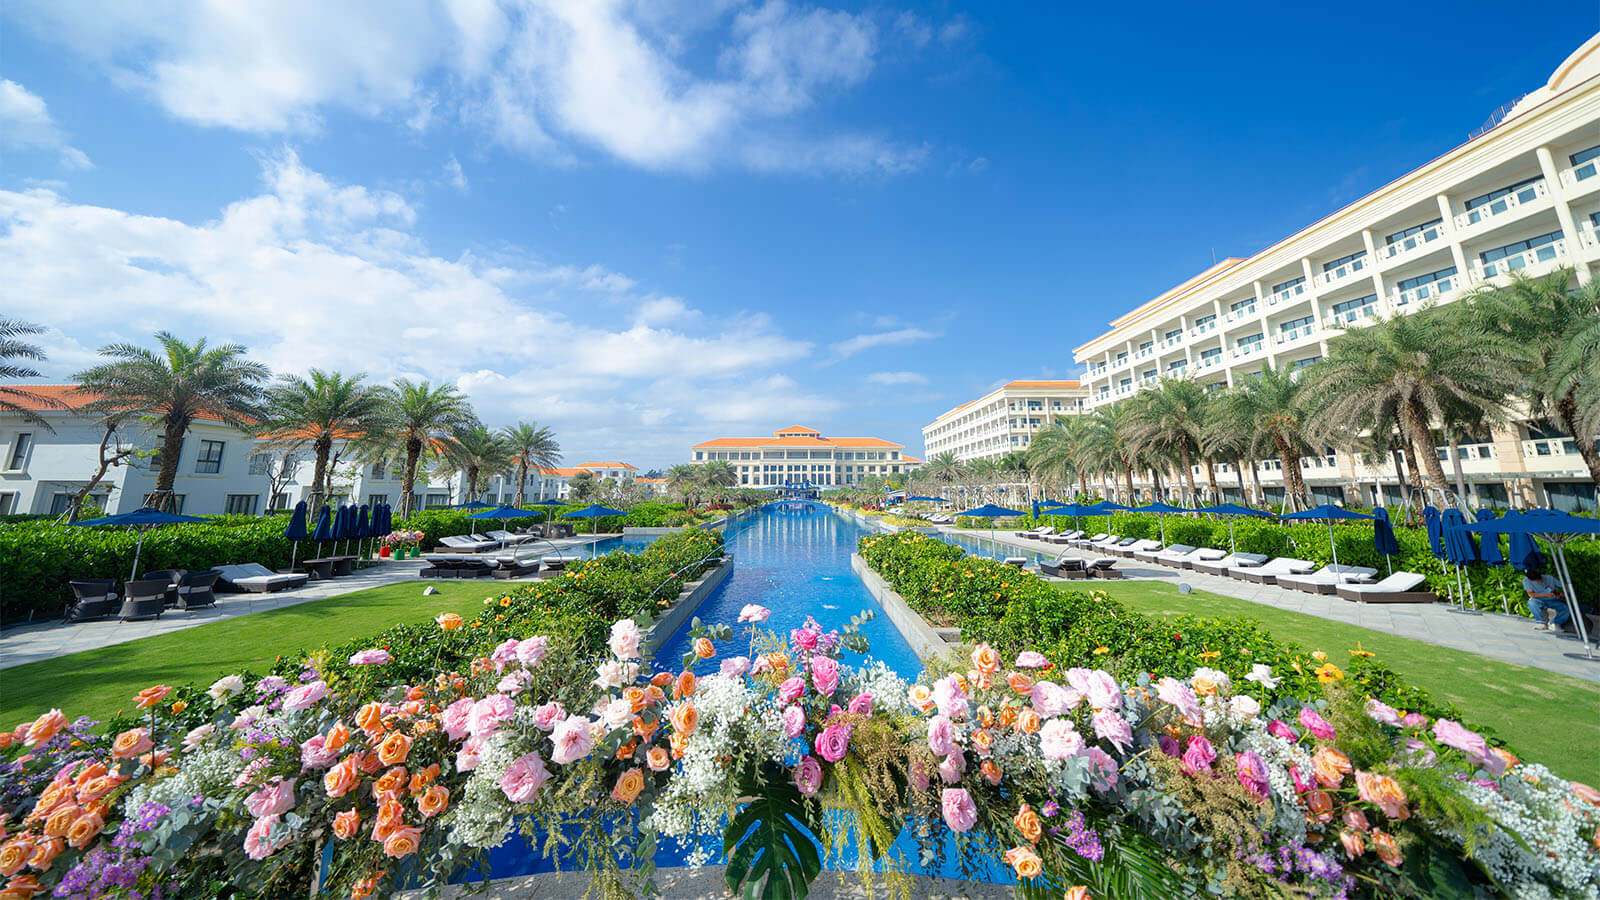 Sheraton Grand Danang Resort & Convention Center Của Tập Đoàn BRG Được Tỷ Phú Ấn Độ Lựa Chọn Làm Nơi Tổ Chức Tiệc Cưới Siêu Xa Hoa